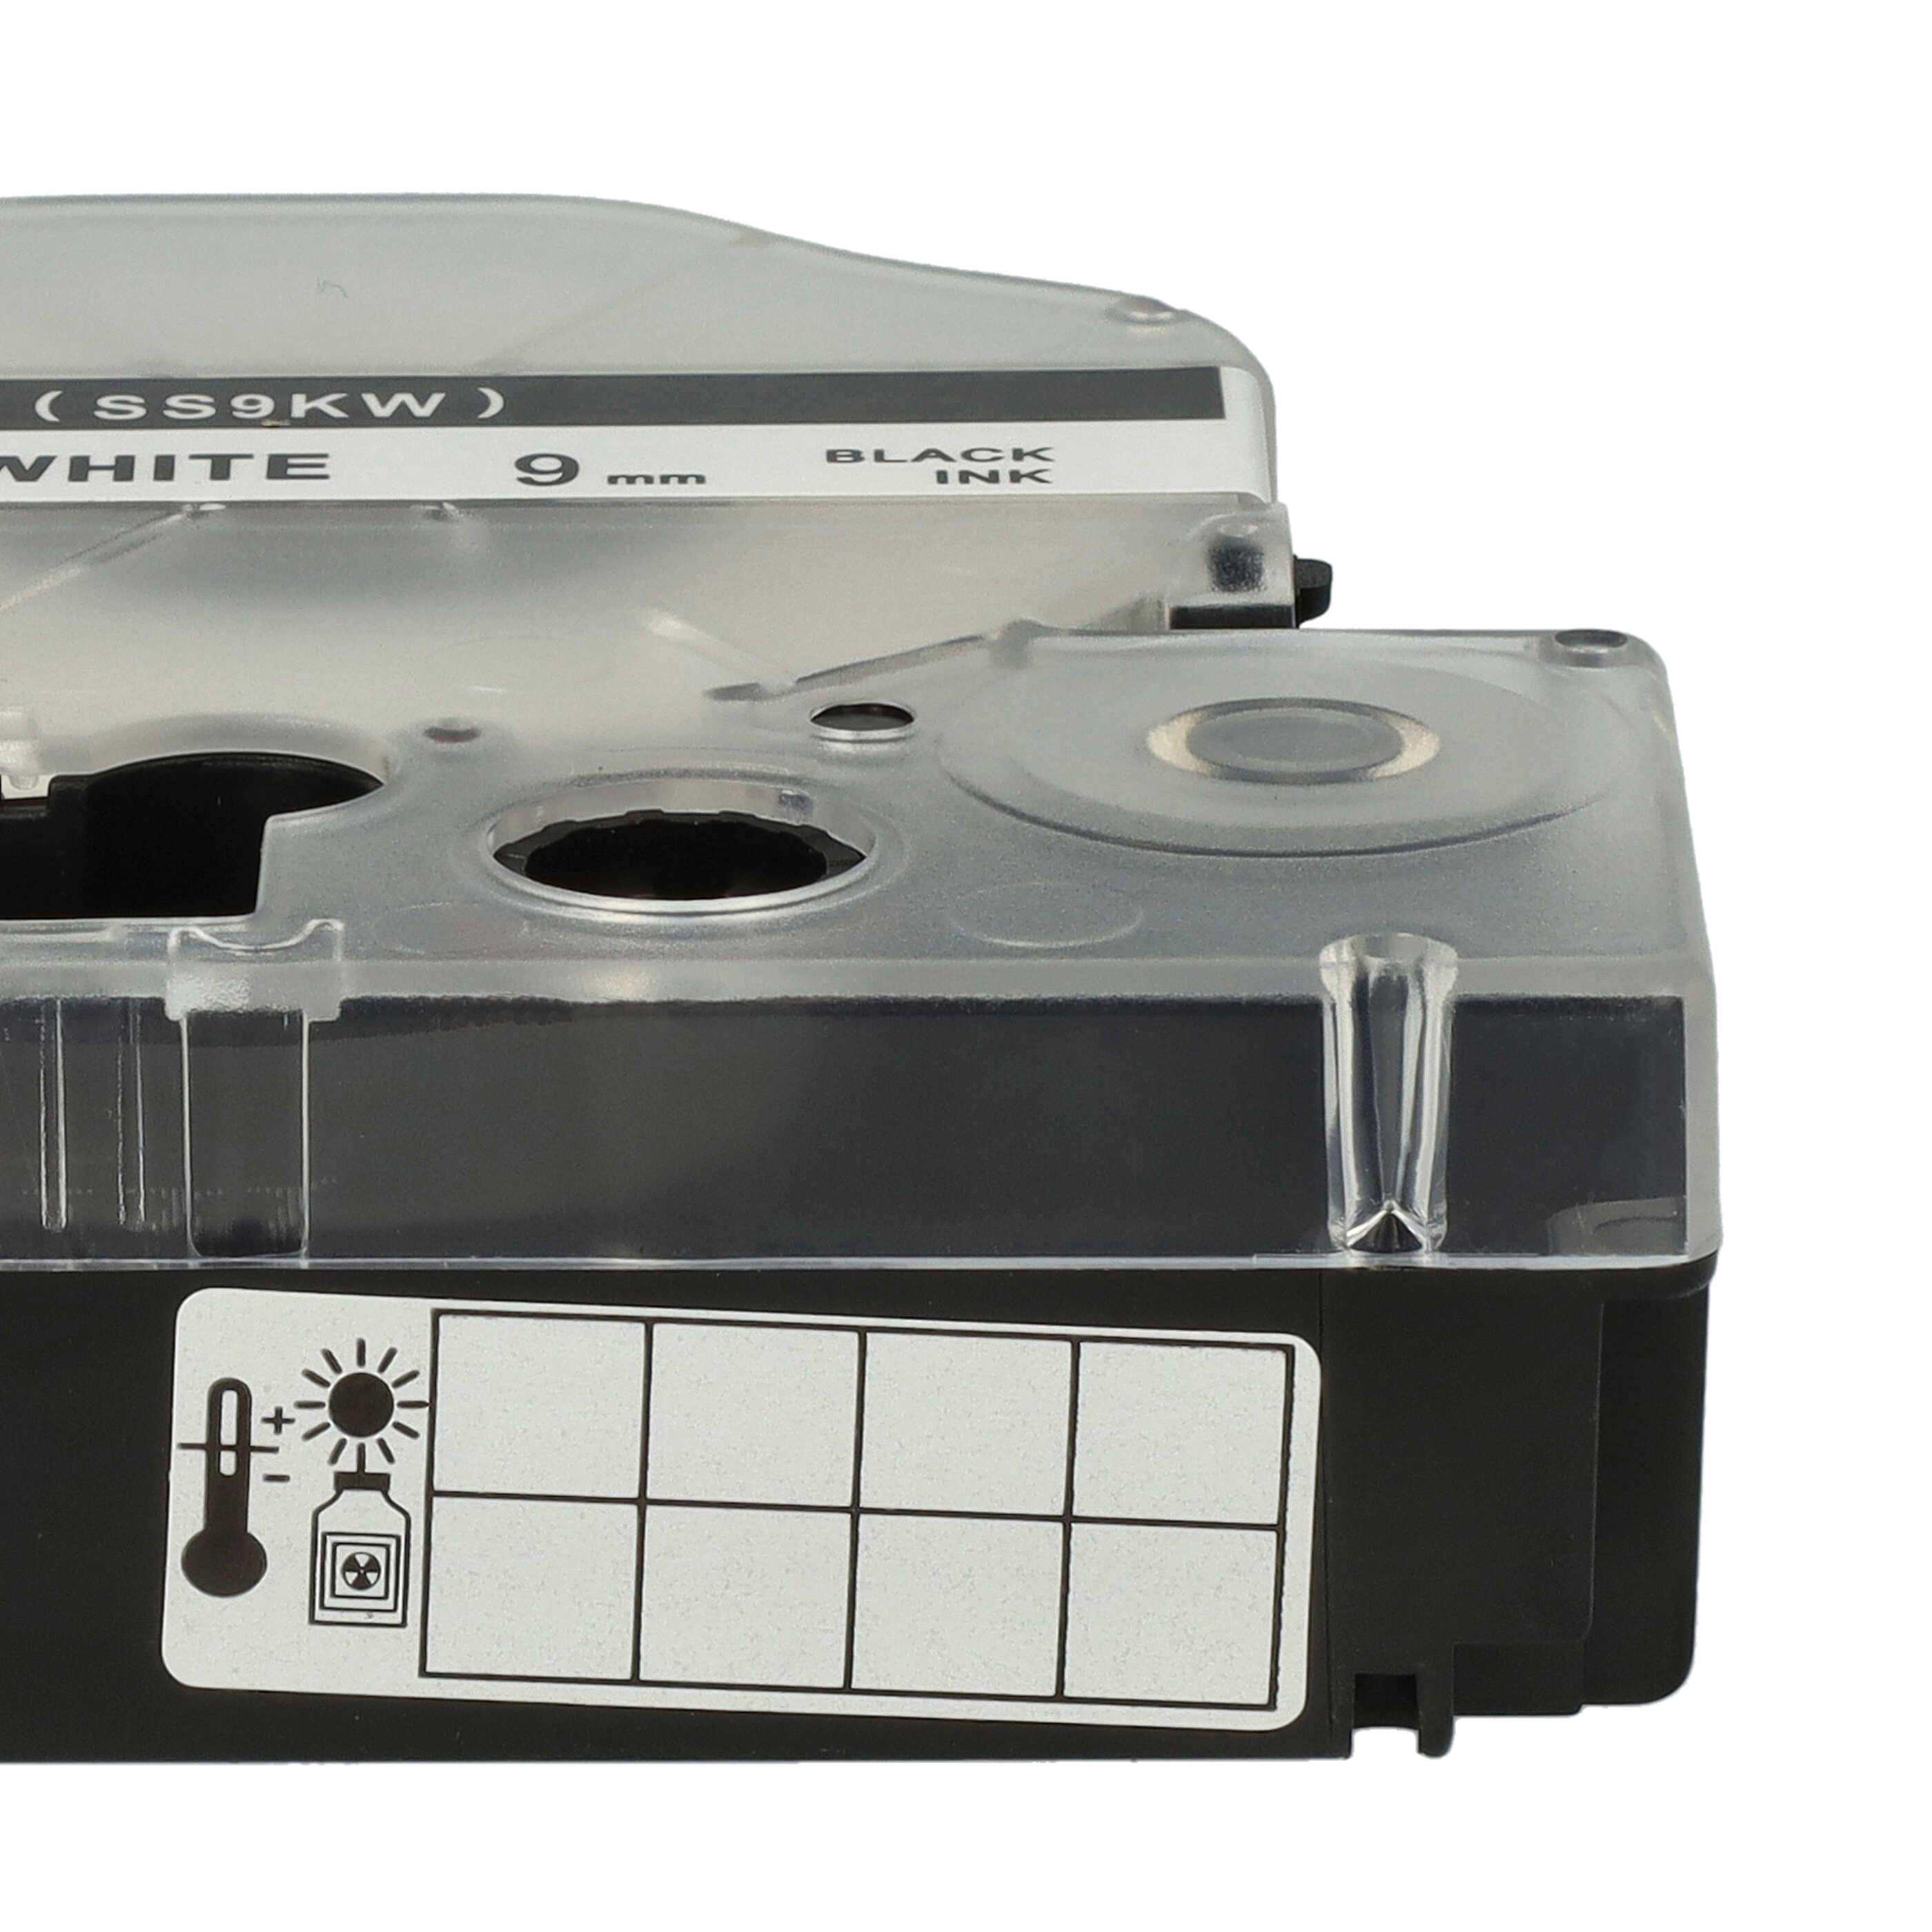 Cassetta nastro sostituisce Epson LC-3WBN per etichettatrice Epson 9mm nero su bianco